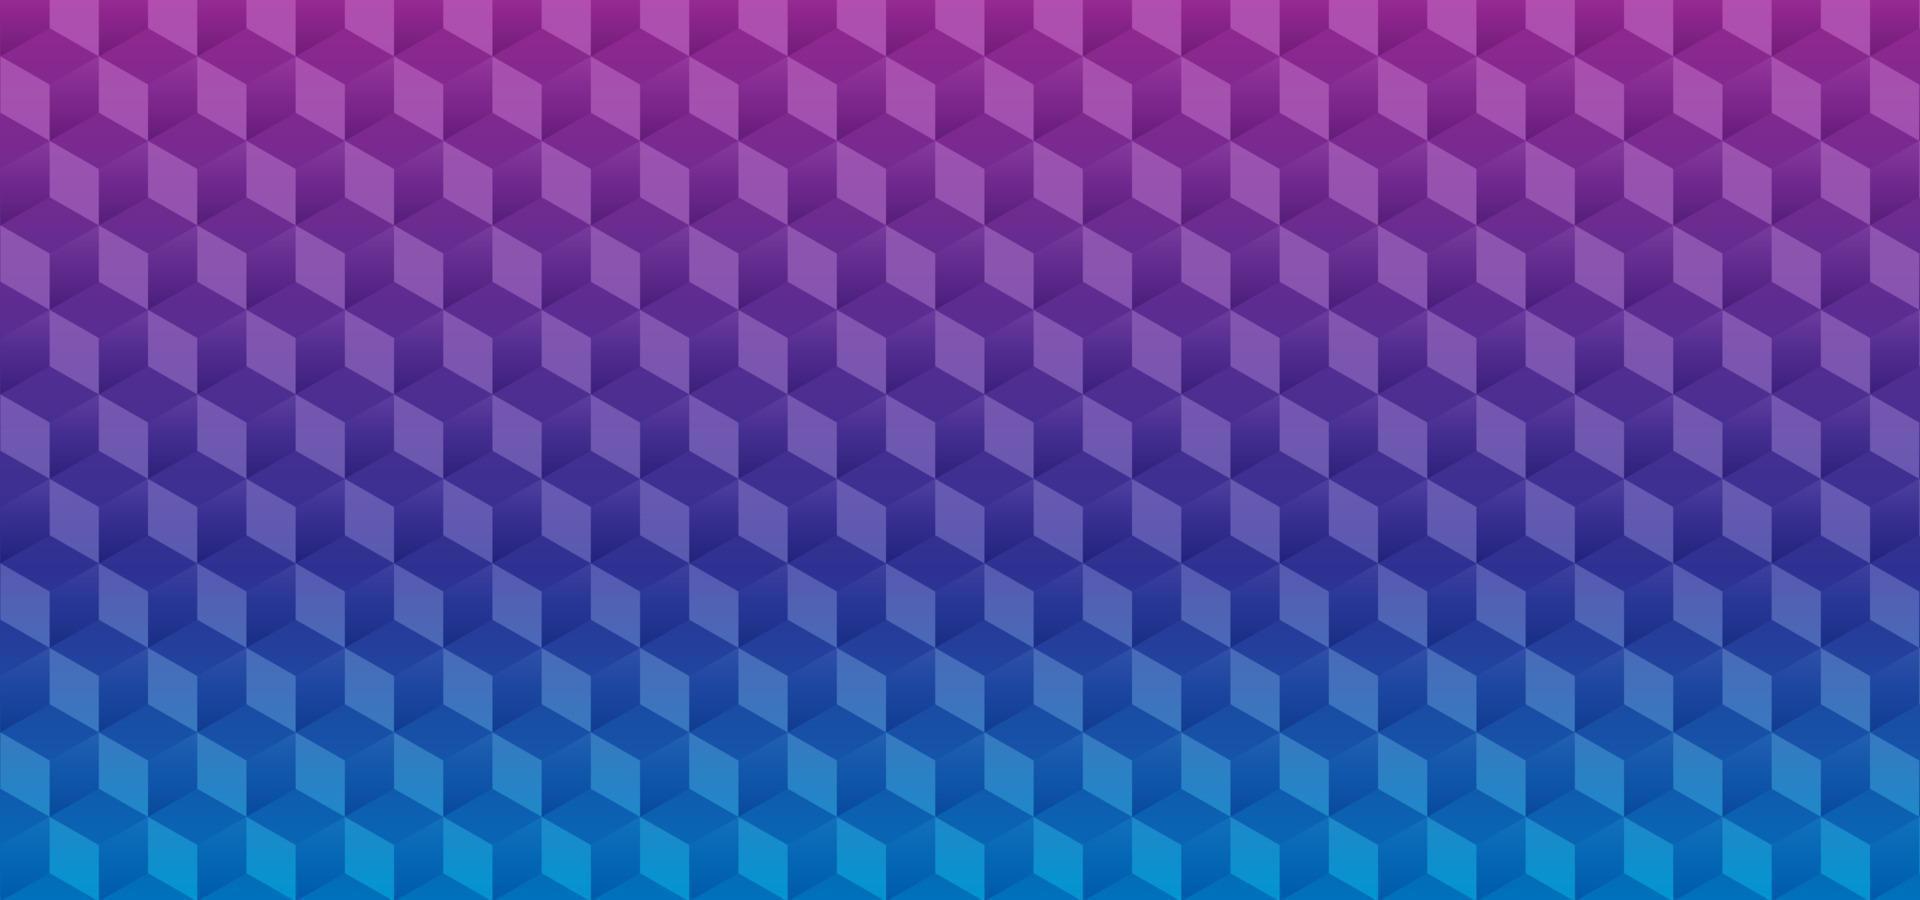 abstrakter Hintergrund mit geometrischen und isometrischen 3D-Blöcken. modernes Blockchain- und Technologiekonzeptdesign vektor